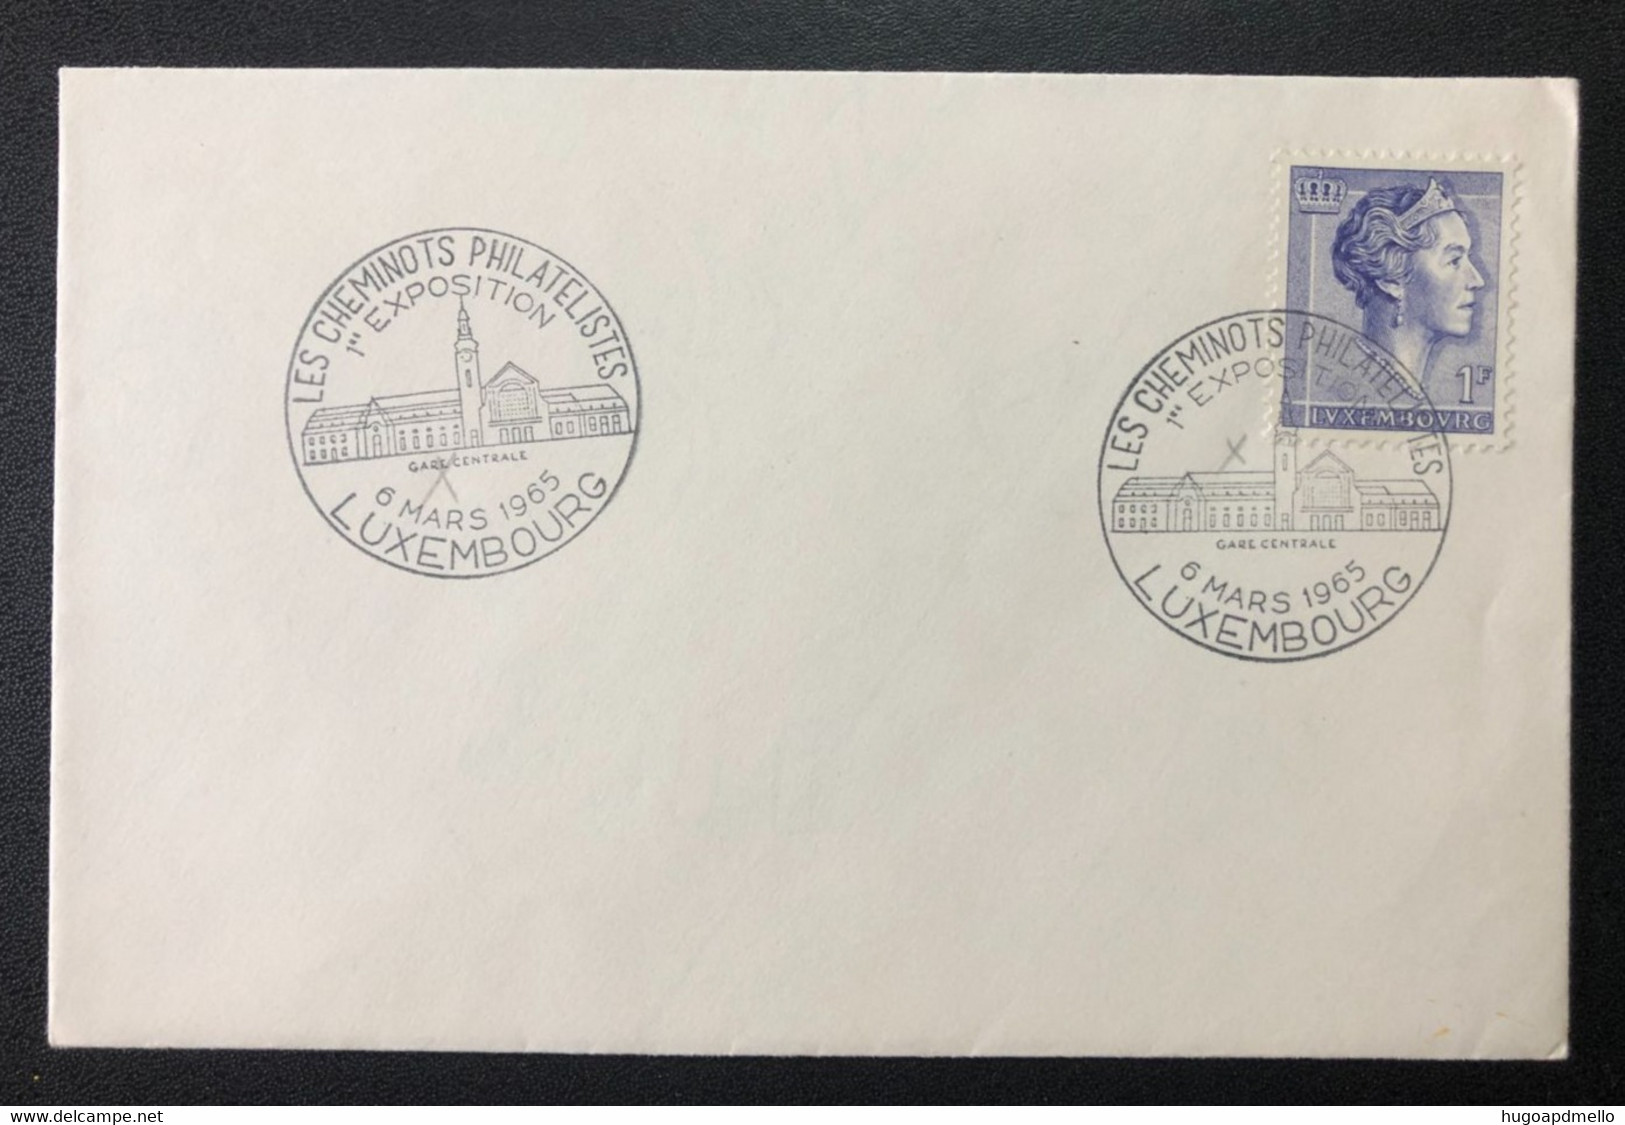 LUXEMBOURG, «1ère Exposition Les Cheminots Philatelistes »,  With Special Postmark, 1965 - Brieven En Documenten